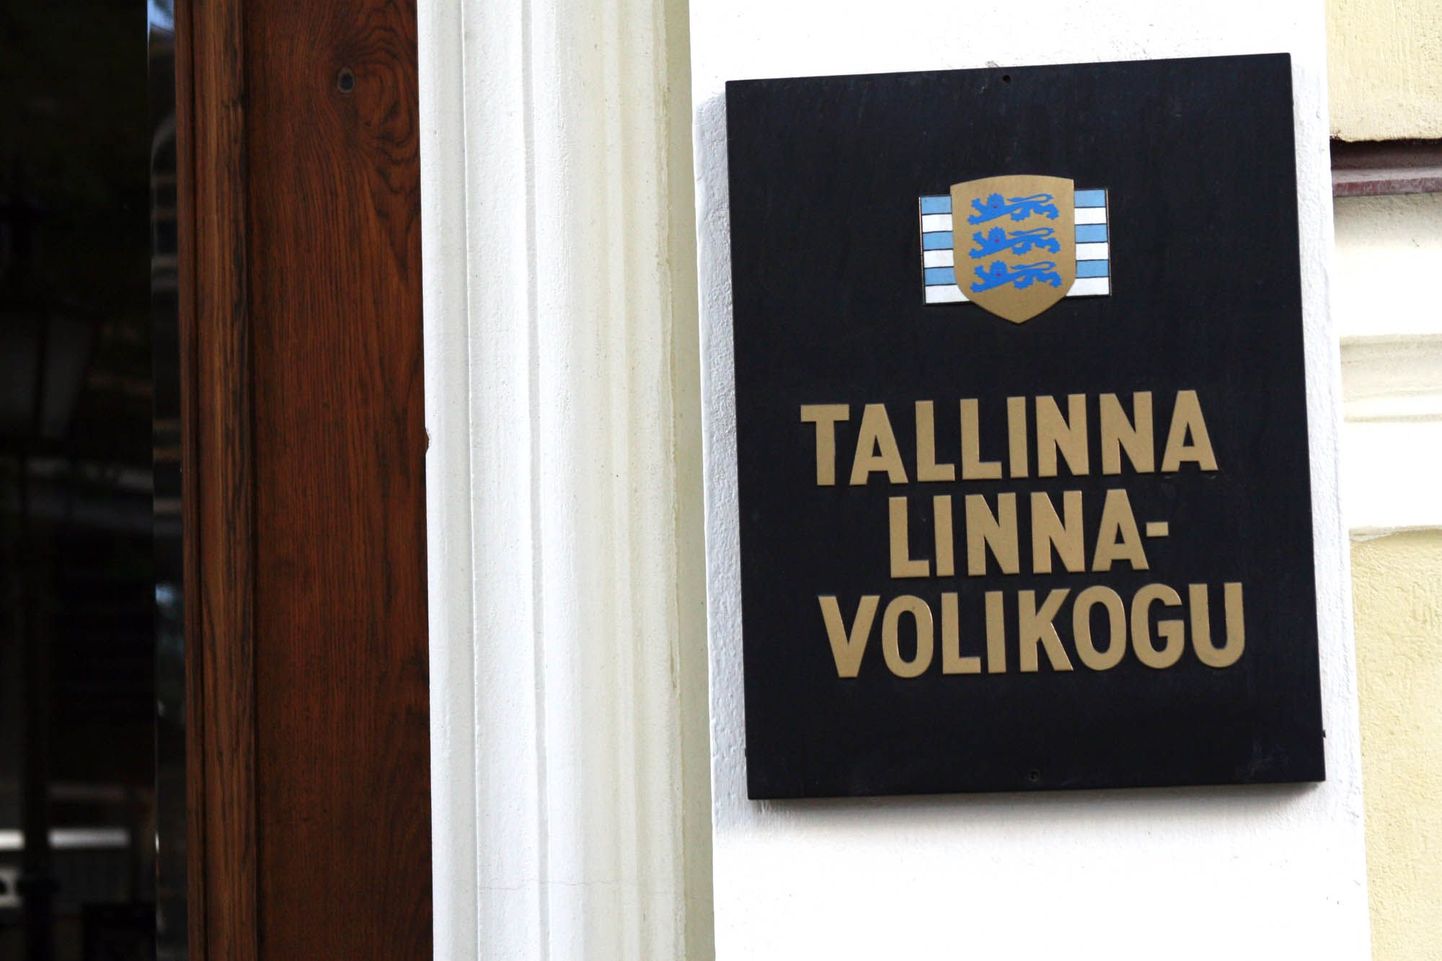 Tallinna linnavolikogu.